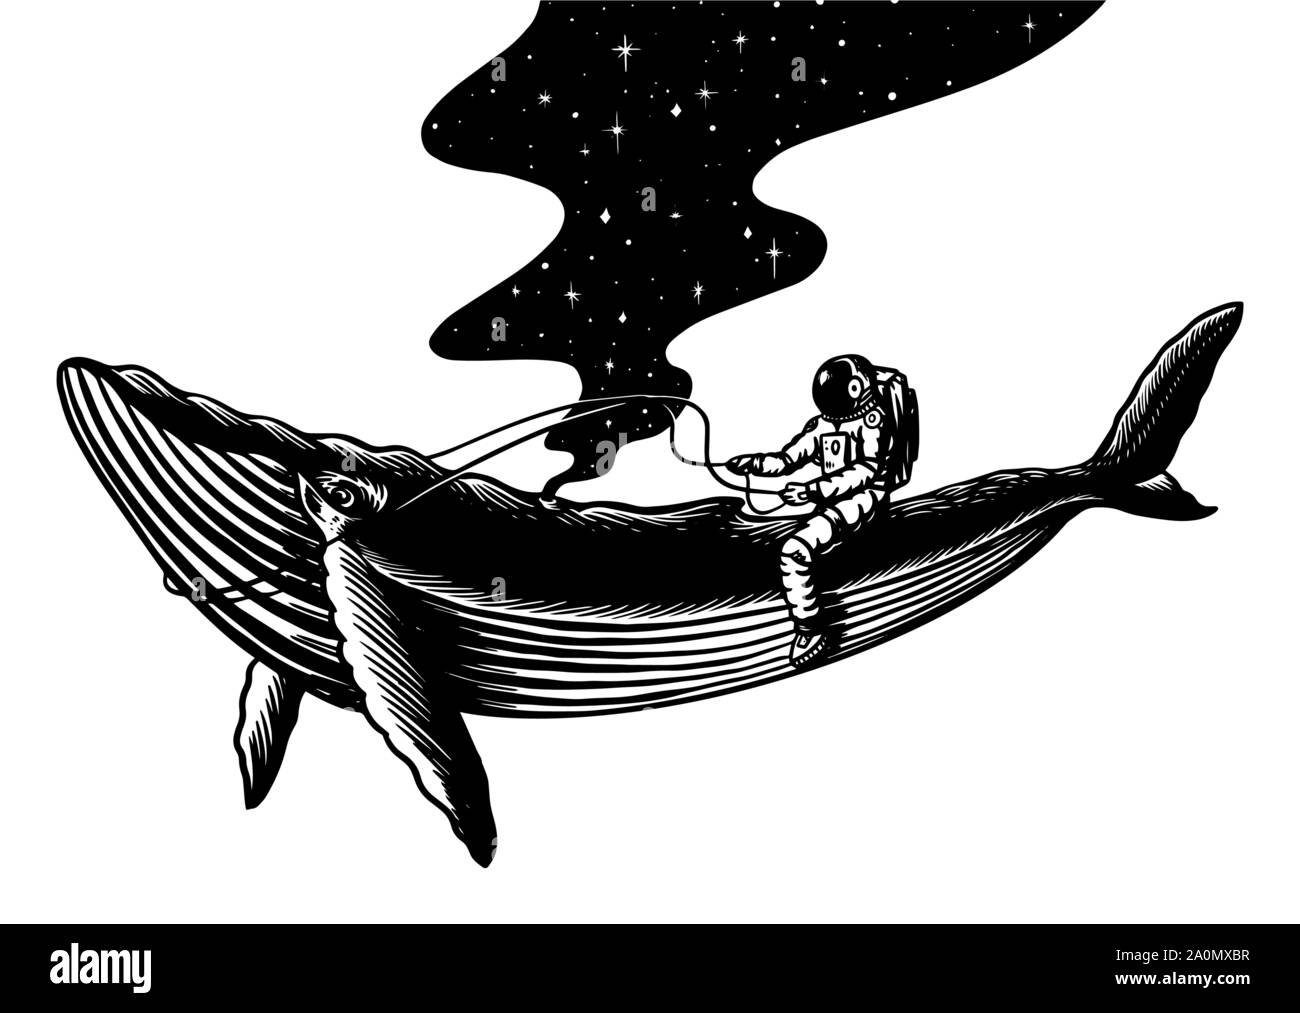 Spaceman et la baleine. Astronaute dans le système solaire. Vieux croquis dessinés à la main, gravée dans un style vintage. Illustration de Vecteur